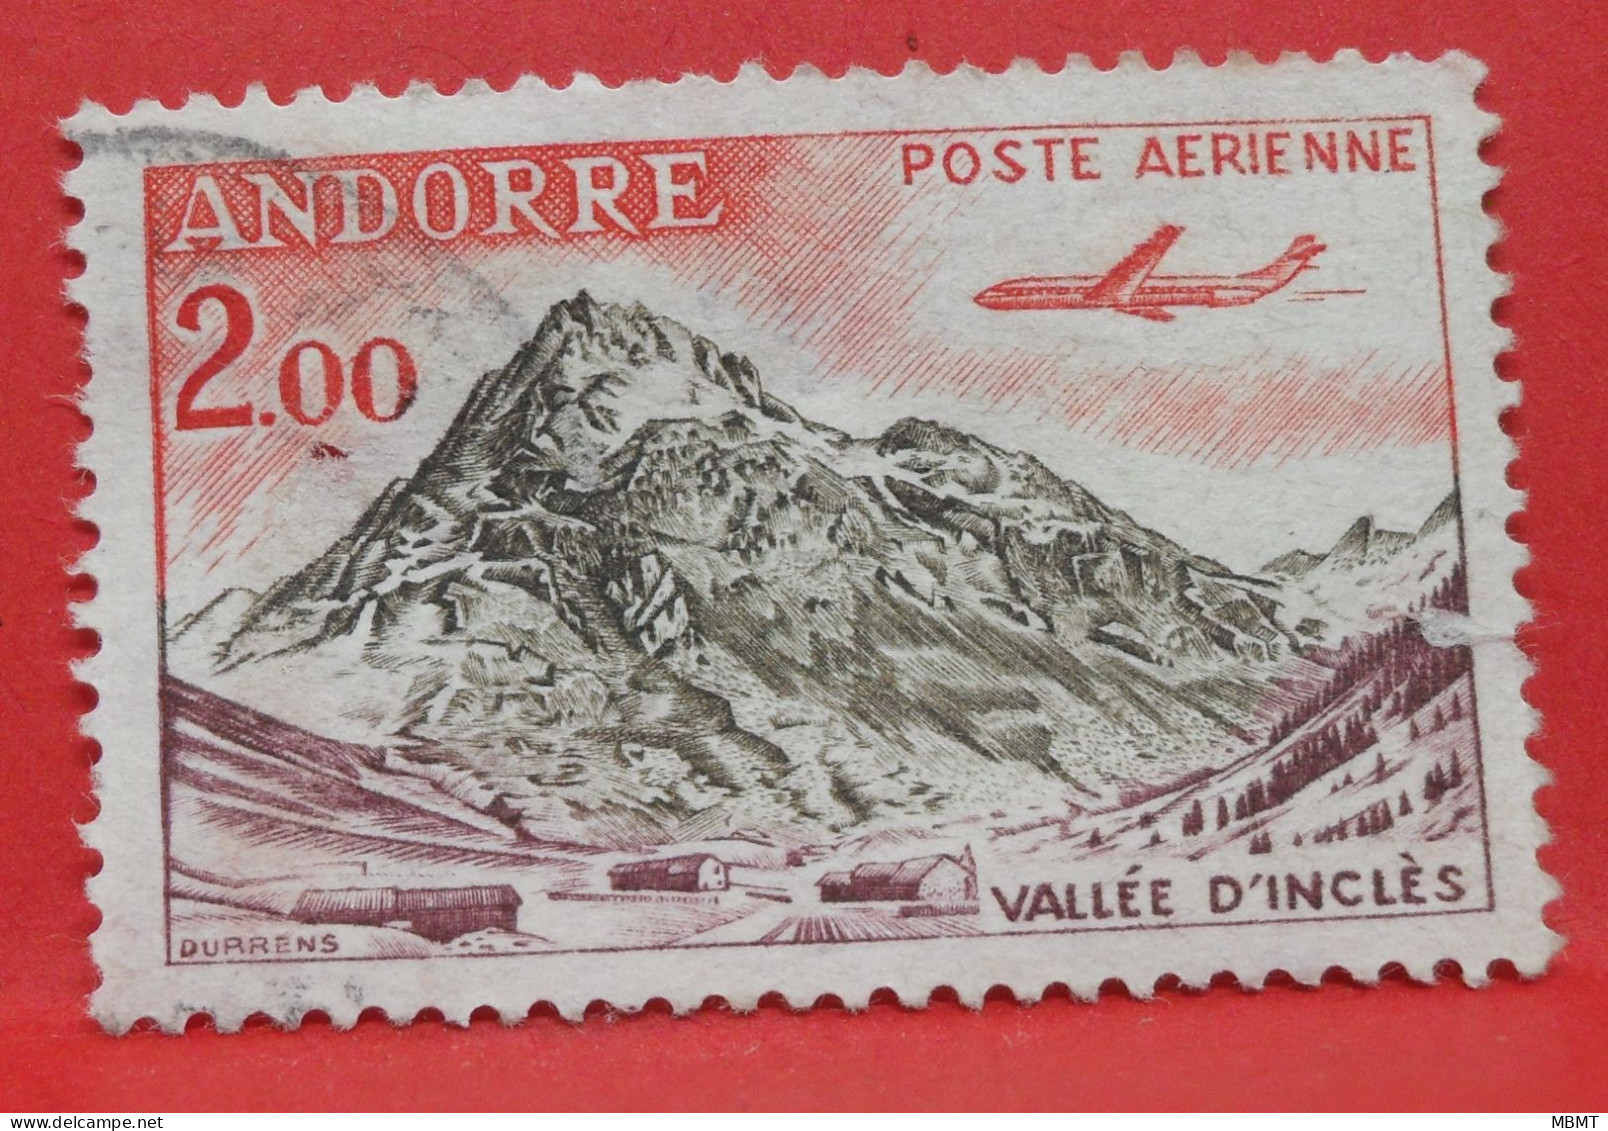 N°175 - 2.00 Francs - Année 1961 - Timbre Oblitéré Andorre Français - - Used Stamps